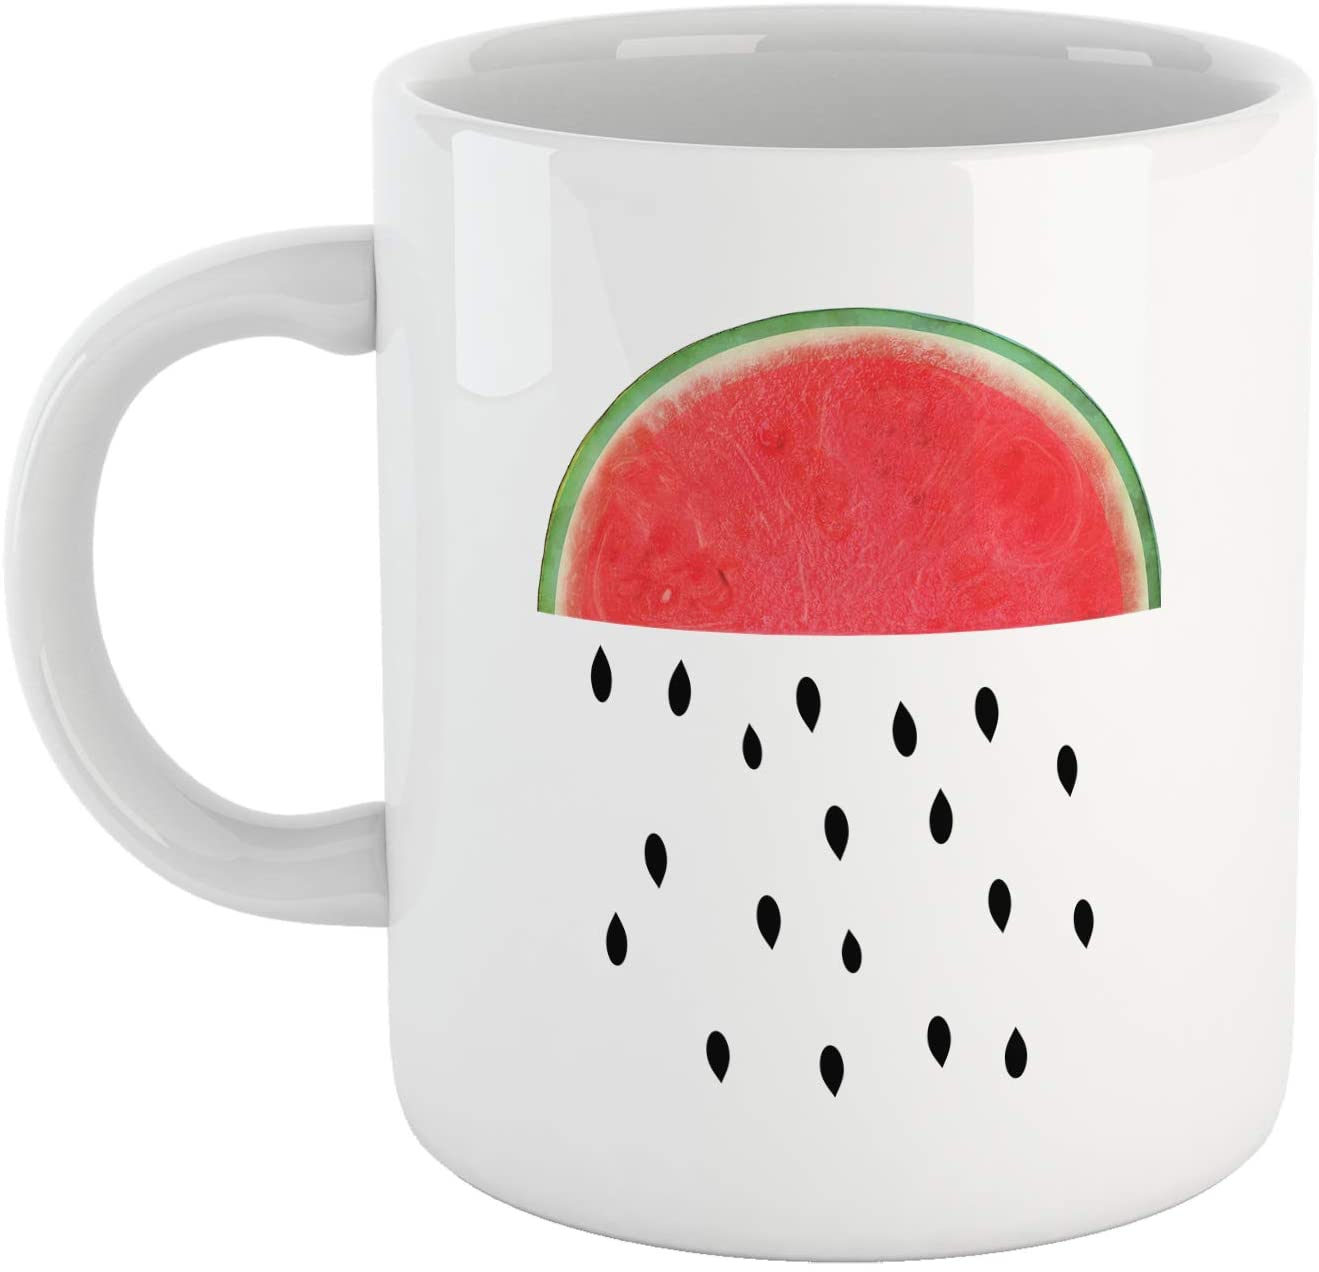 Tomato Tazza Anguria Pioggia di Semi - Mug Watermelon Rain - Choose ur Color Cuc shop